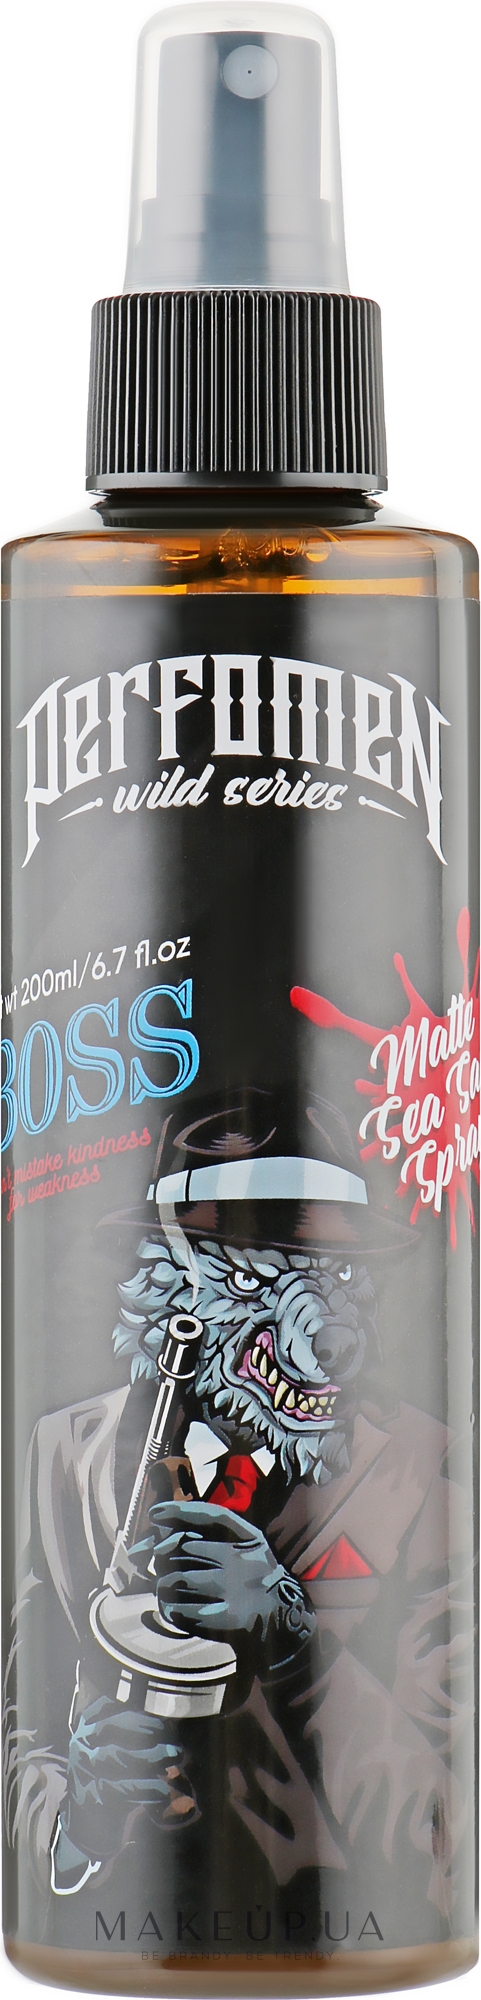 Матовый солевой спрей для волос - Perfomen Wild Series Boss Matte Sea Salt Spray — фото 200ml